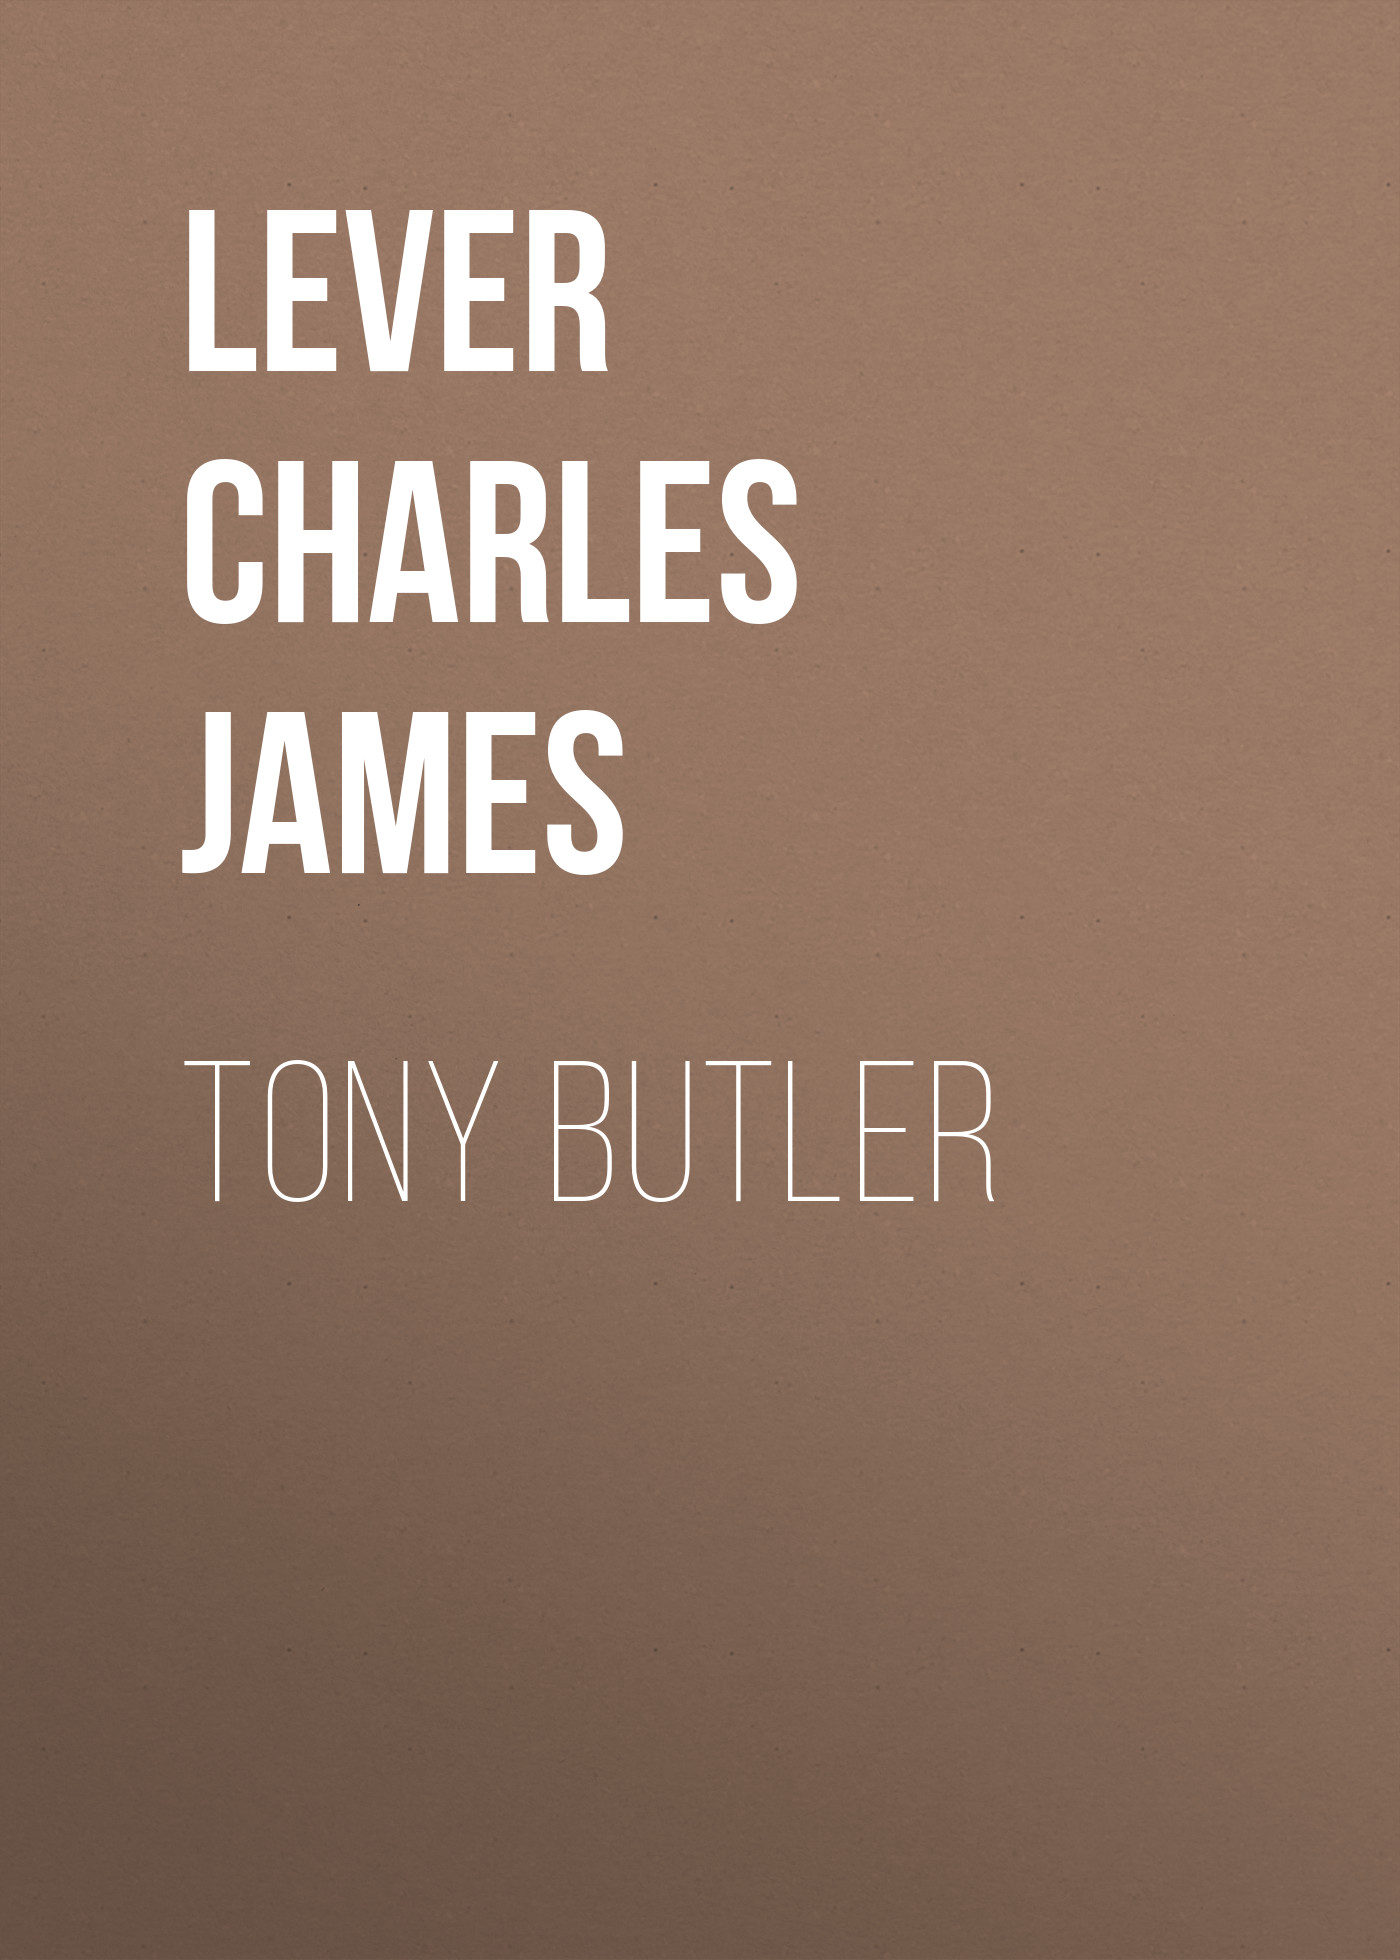 Книга Tony Butler из серии , созданная Charles Lever, может относится к жанру Литература 19 века, Зарубежная старинная литература, Зарубежная классика. Стоимость электронной книги Tony Butler с идентификатором 25449860 составляет 0 руб.